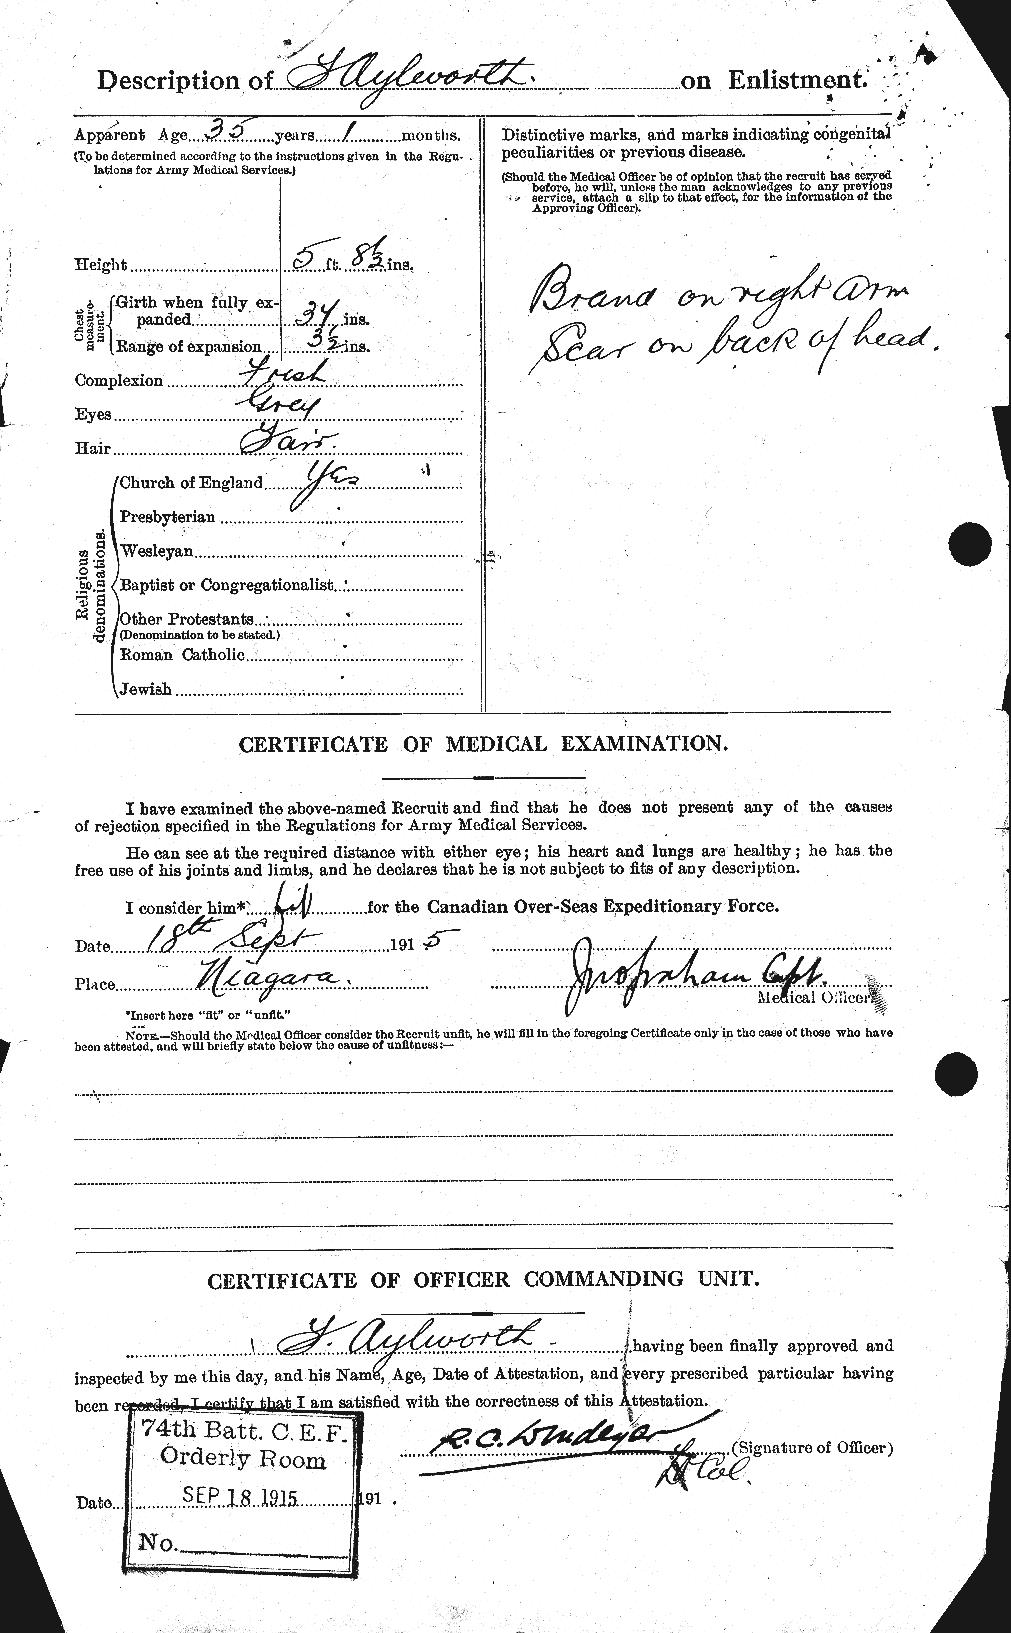 Dossiers du Personnel de la Première Guerre mondiale - CEC 215801b